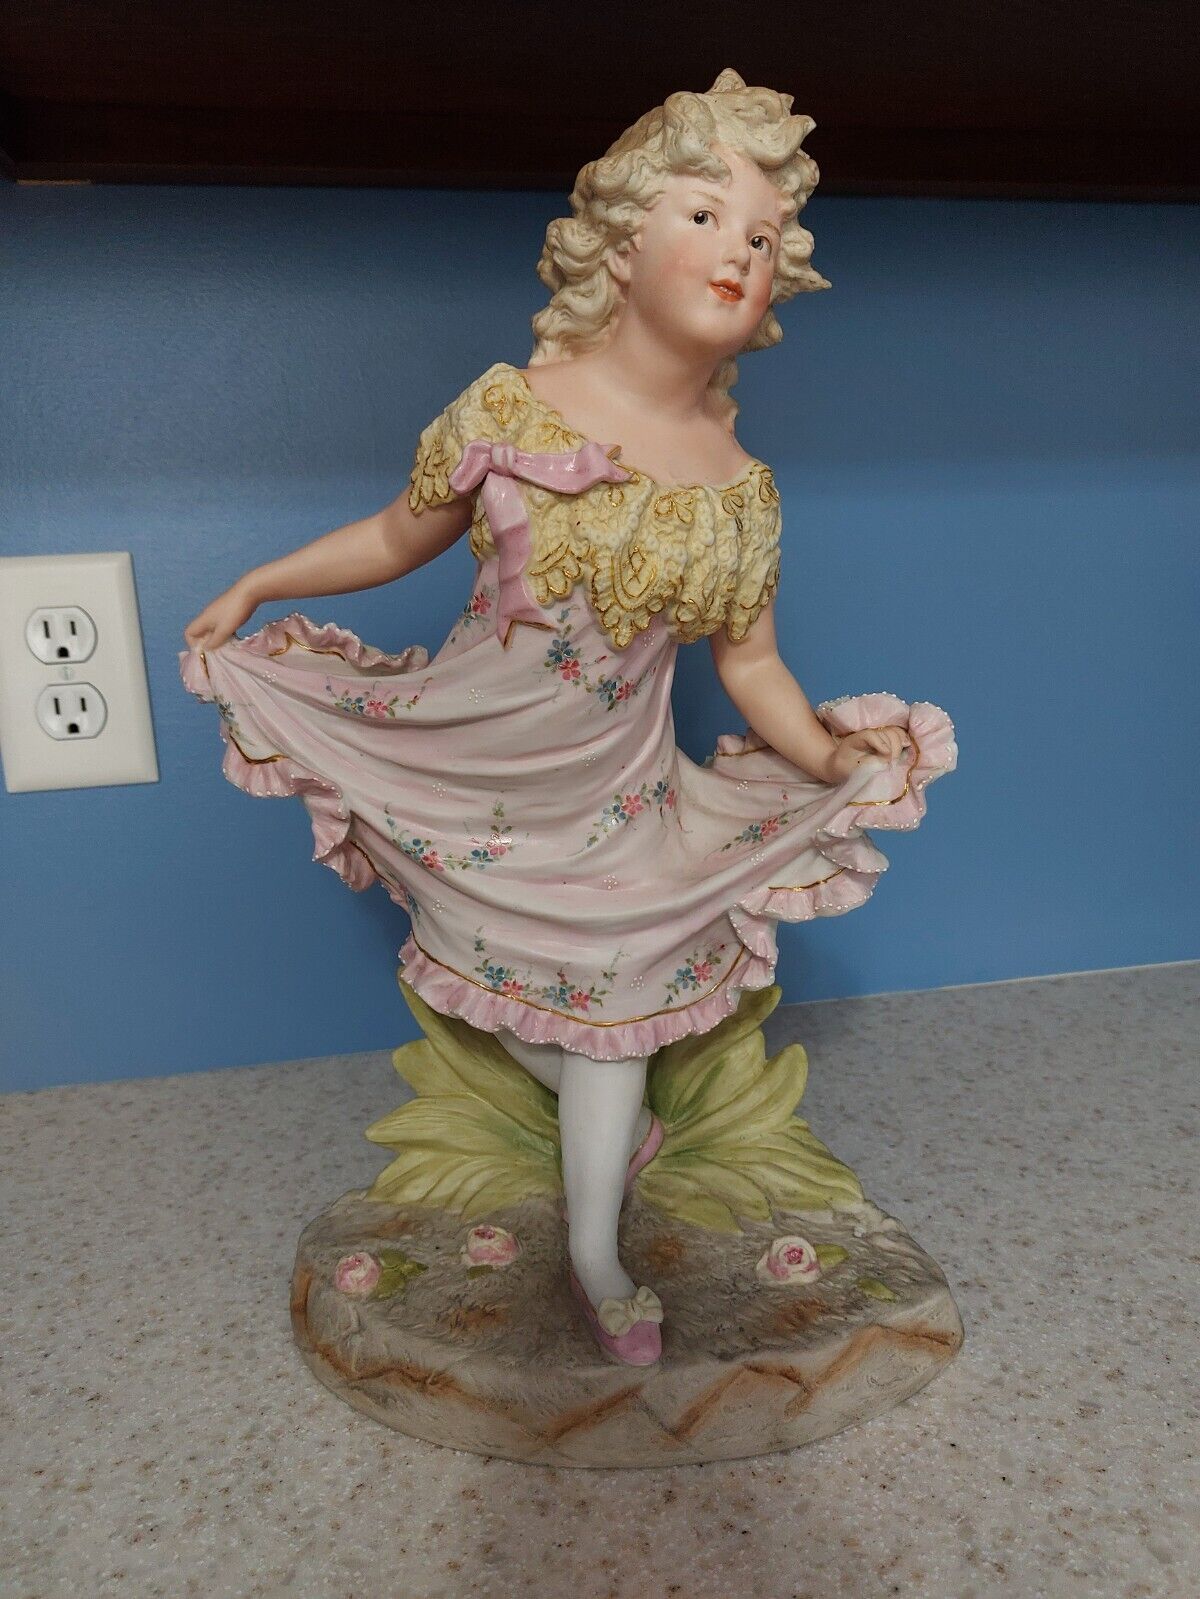 Vintage German Carl Schneider Bisque Porcelain Figurine Girl in Dress Victorian